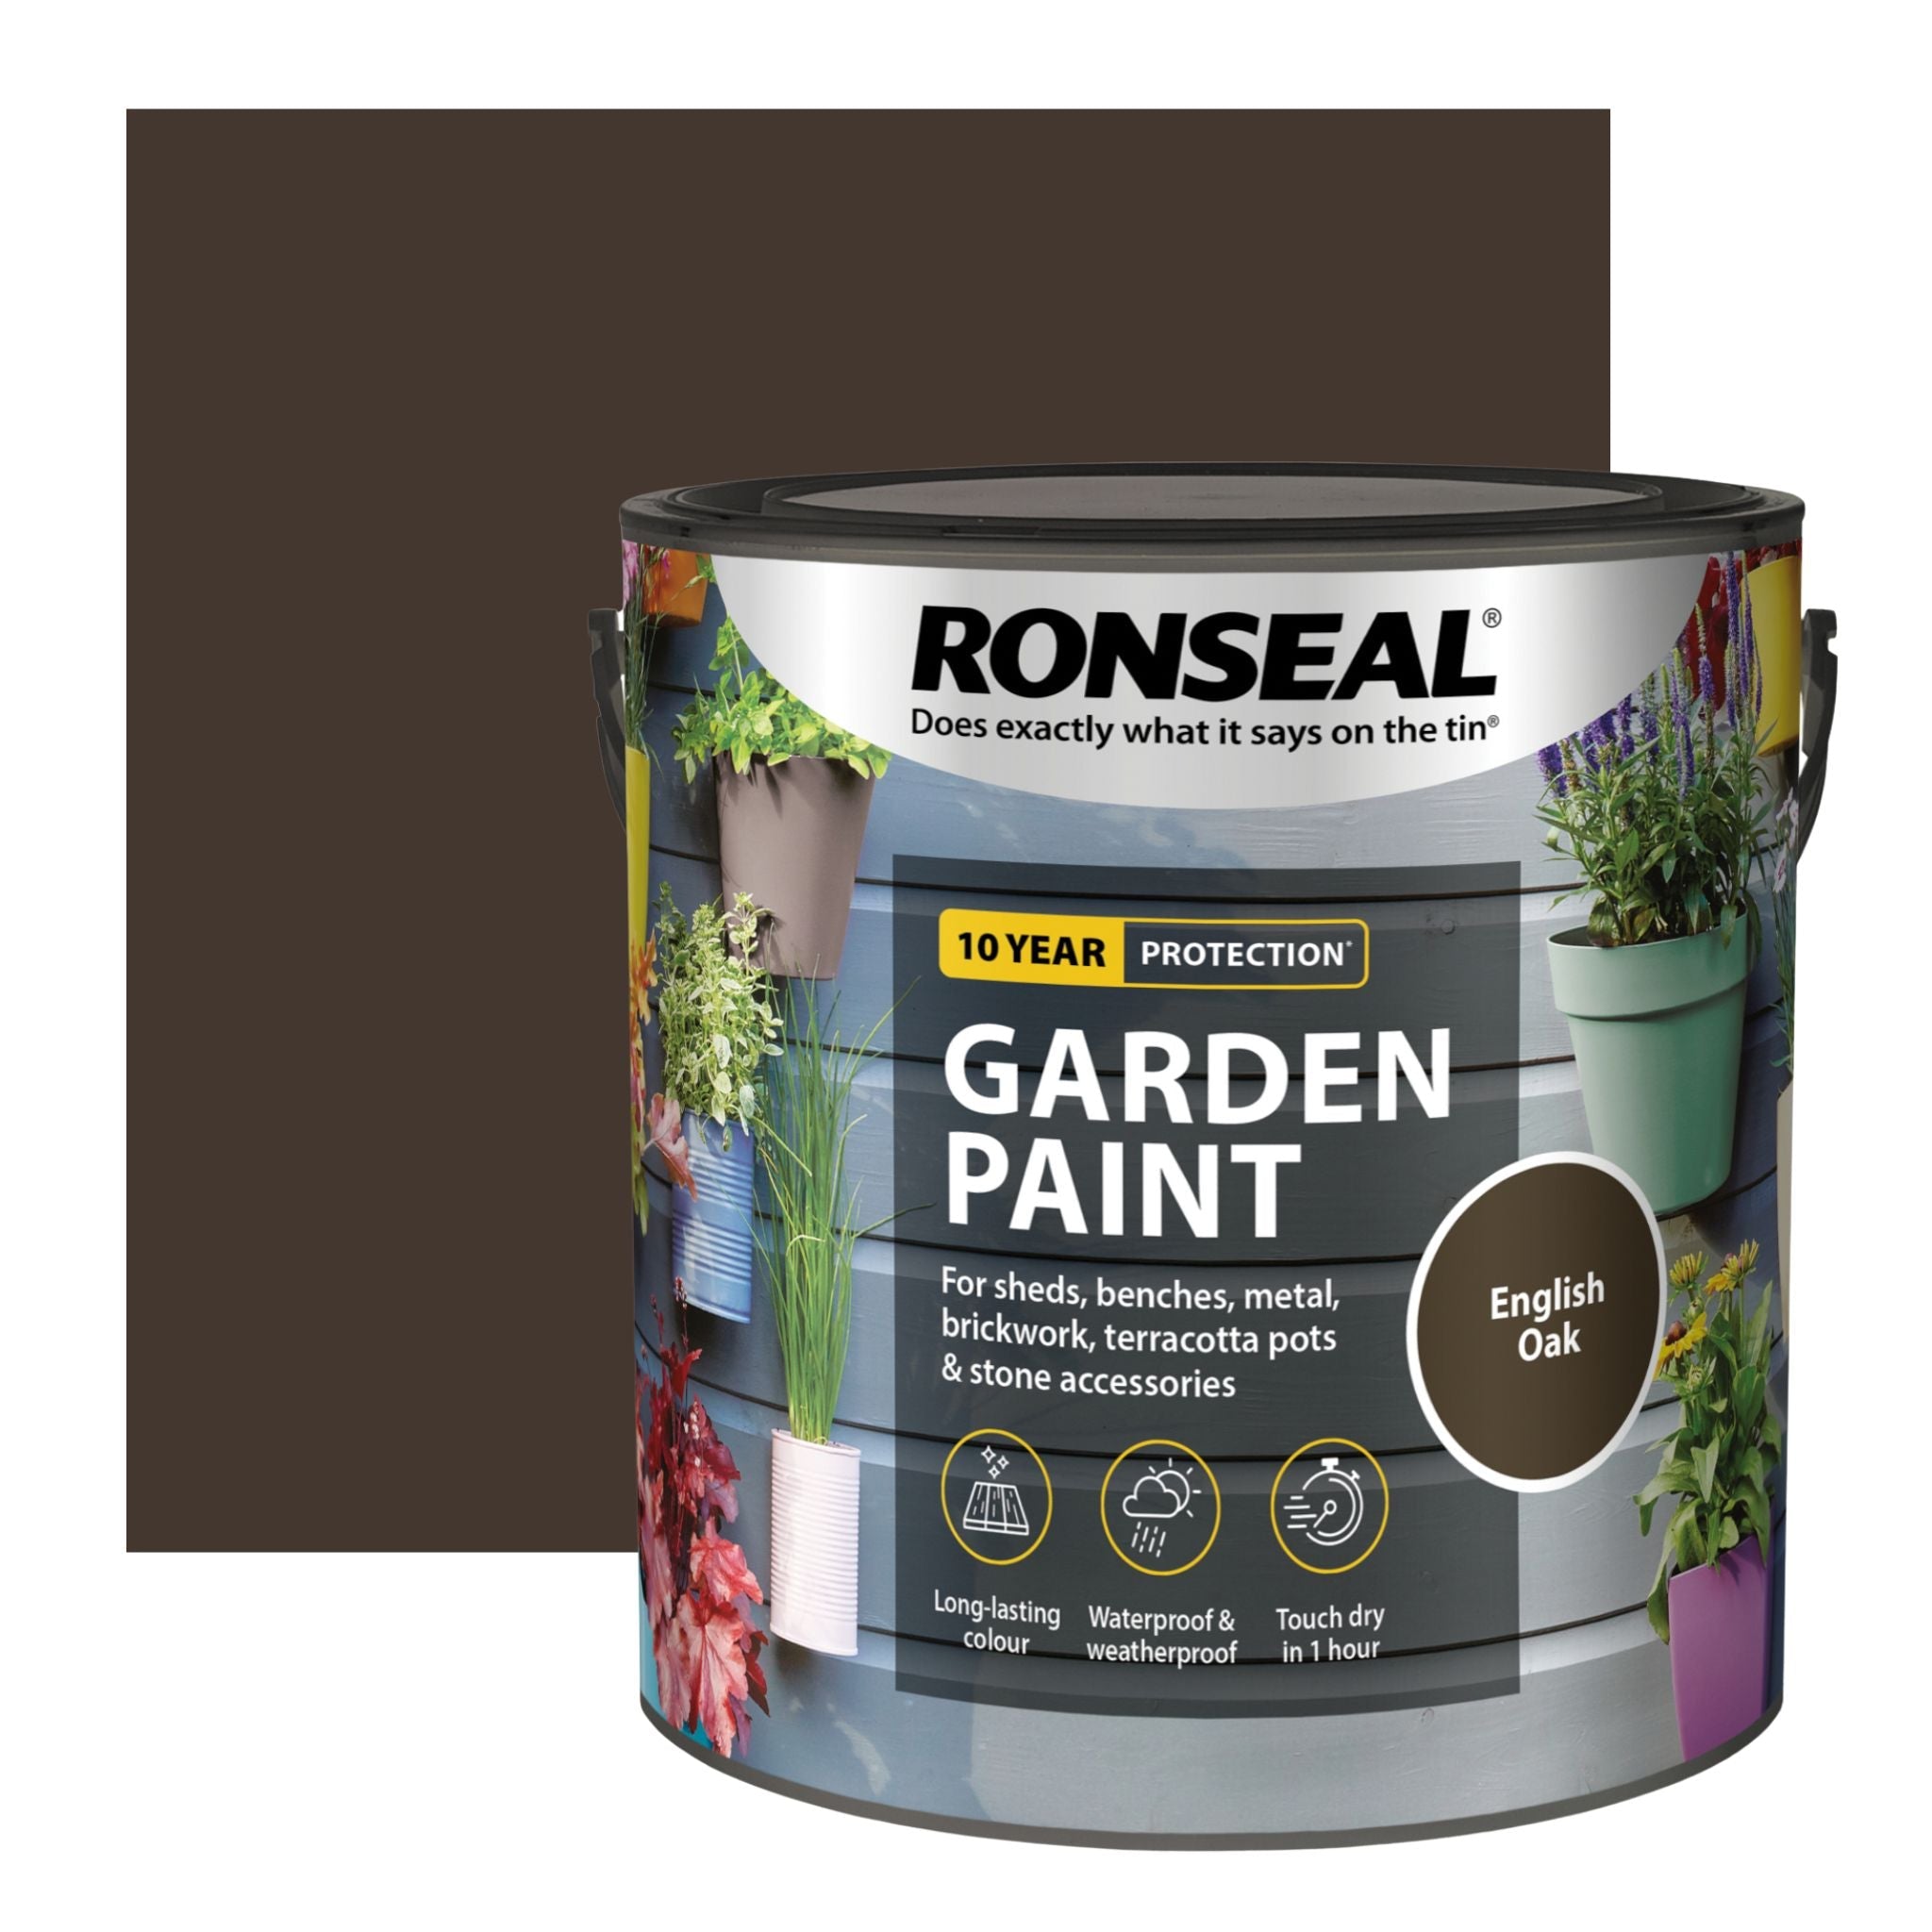 Ronseal Garden Paint - Restorate-5010214874293